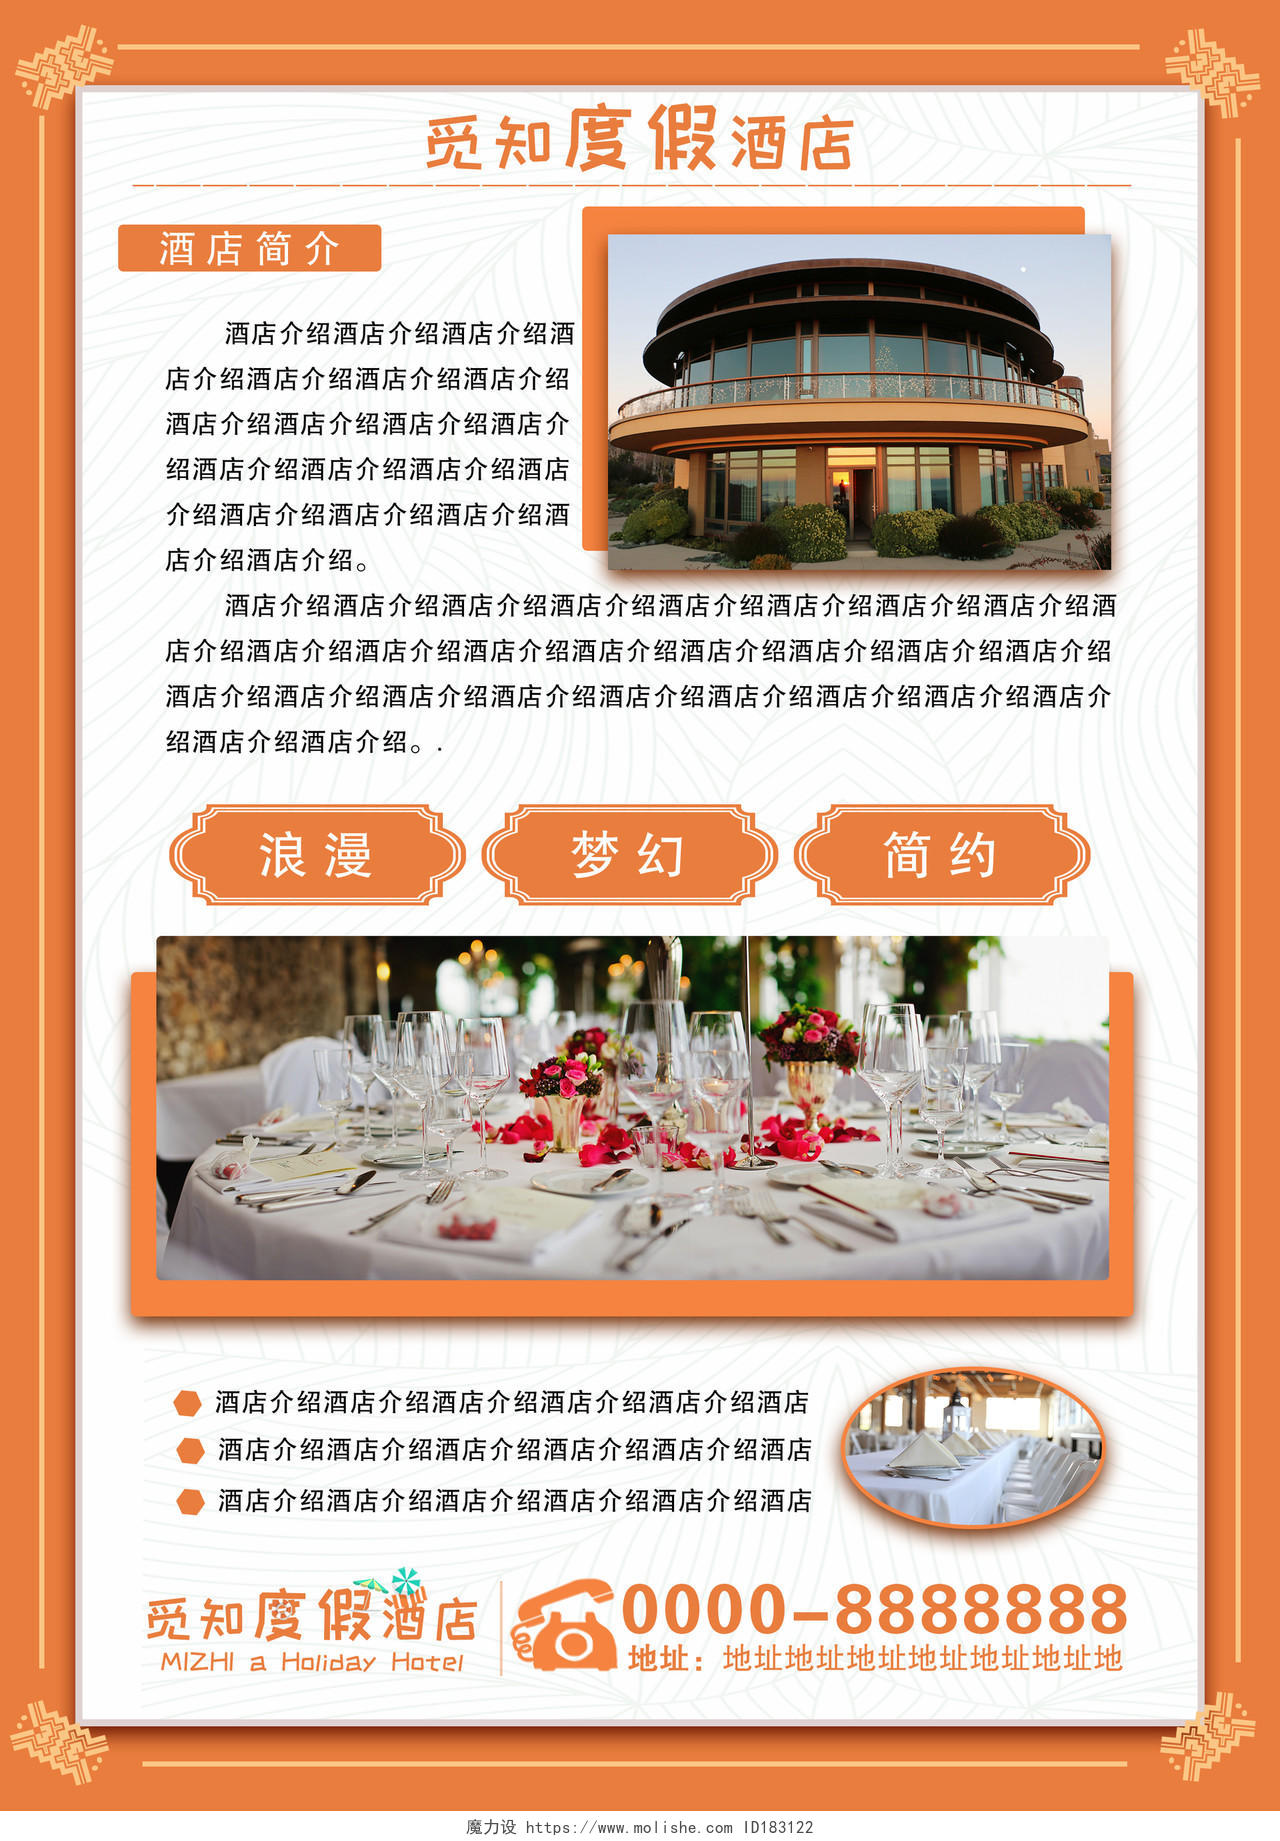 橙色风情蜜月婚礼旅行觅知度假酒店宣传单页设计